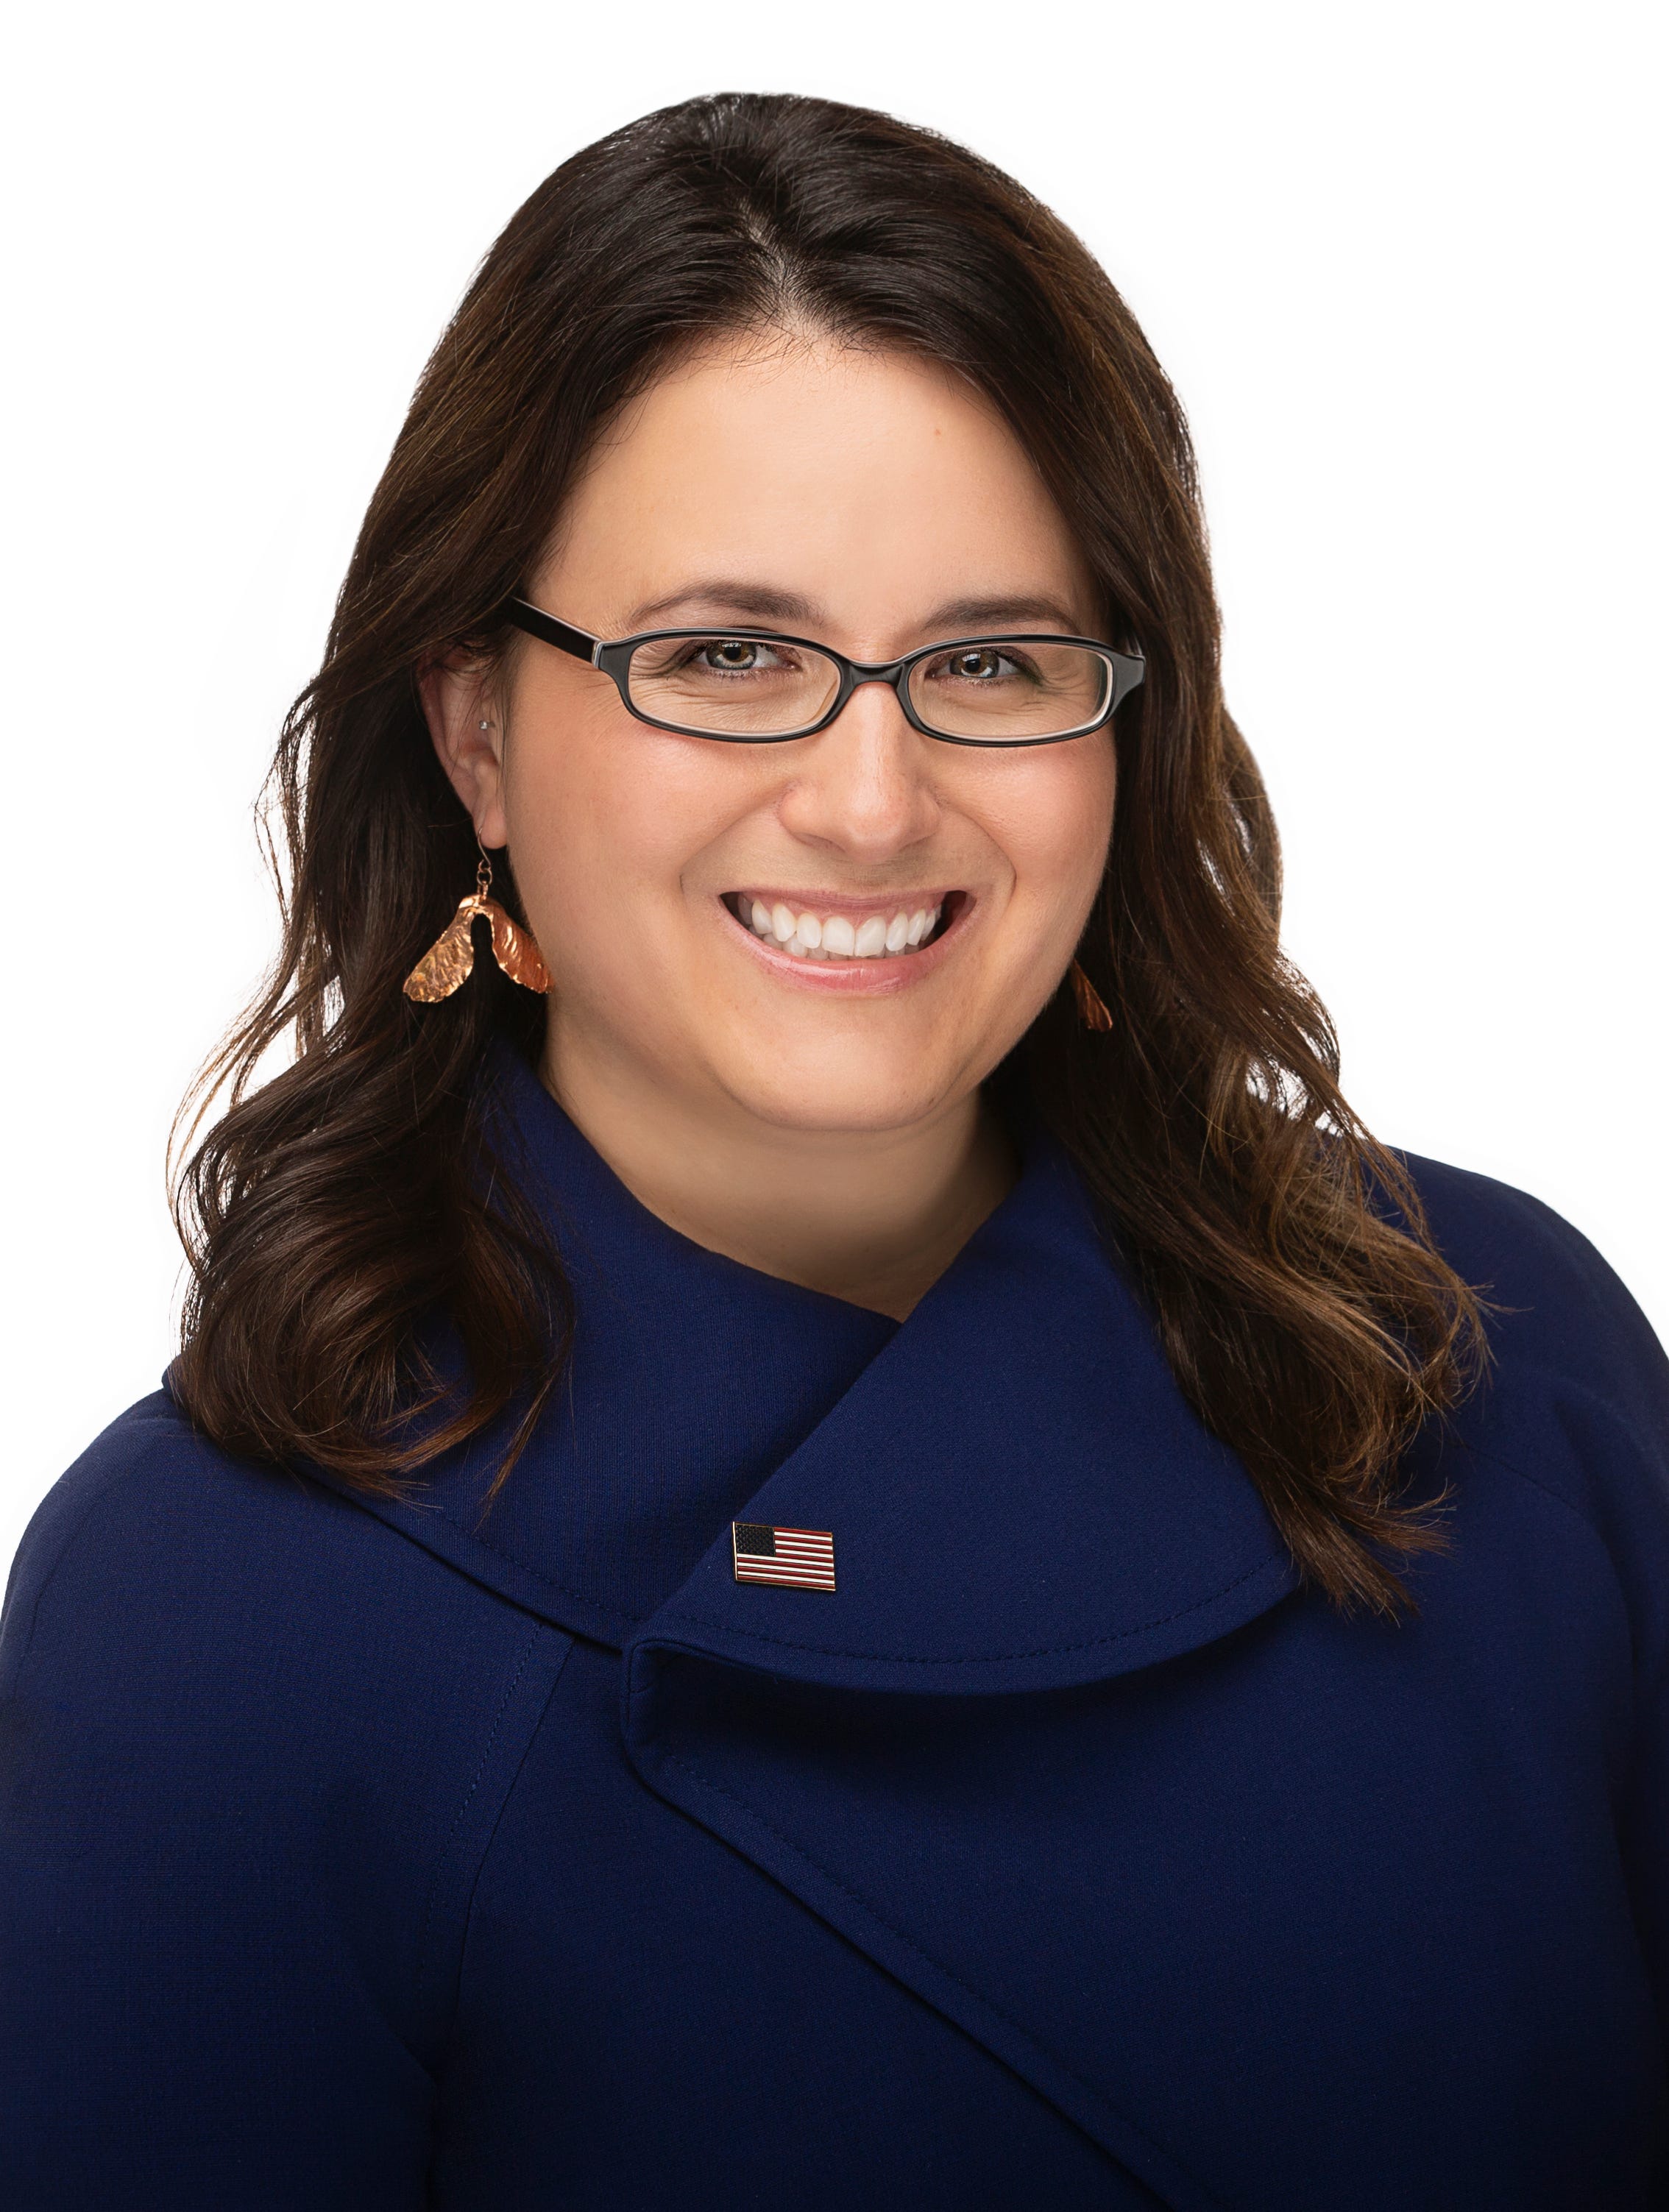 Katie Rosenberg is mayor of Wausau